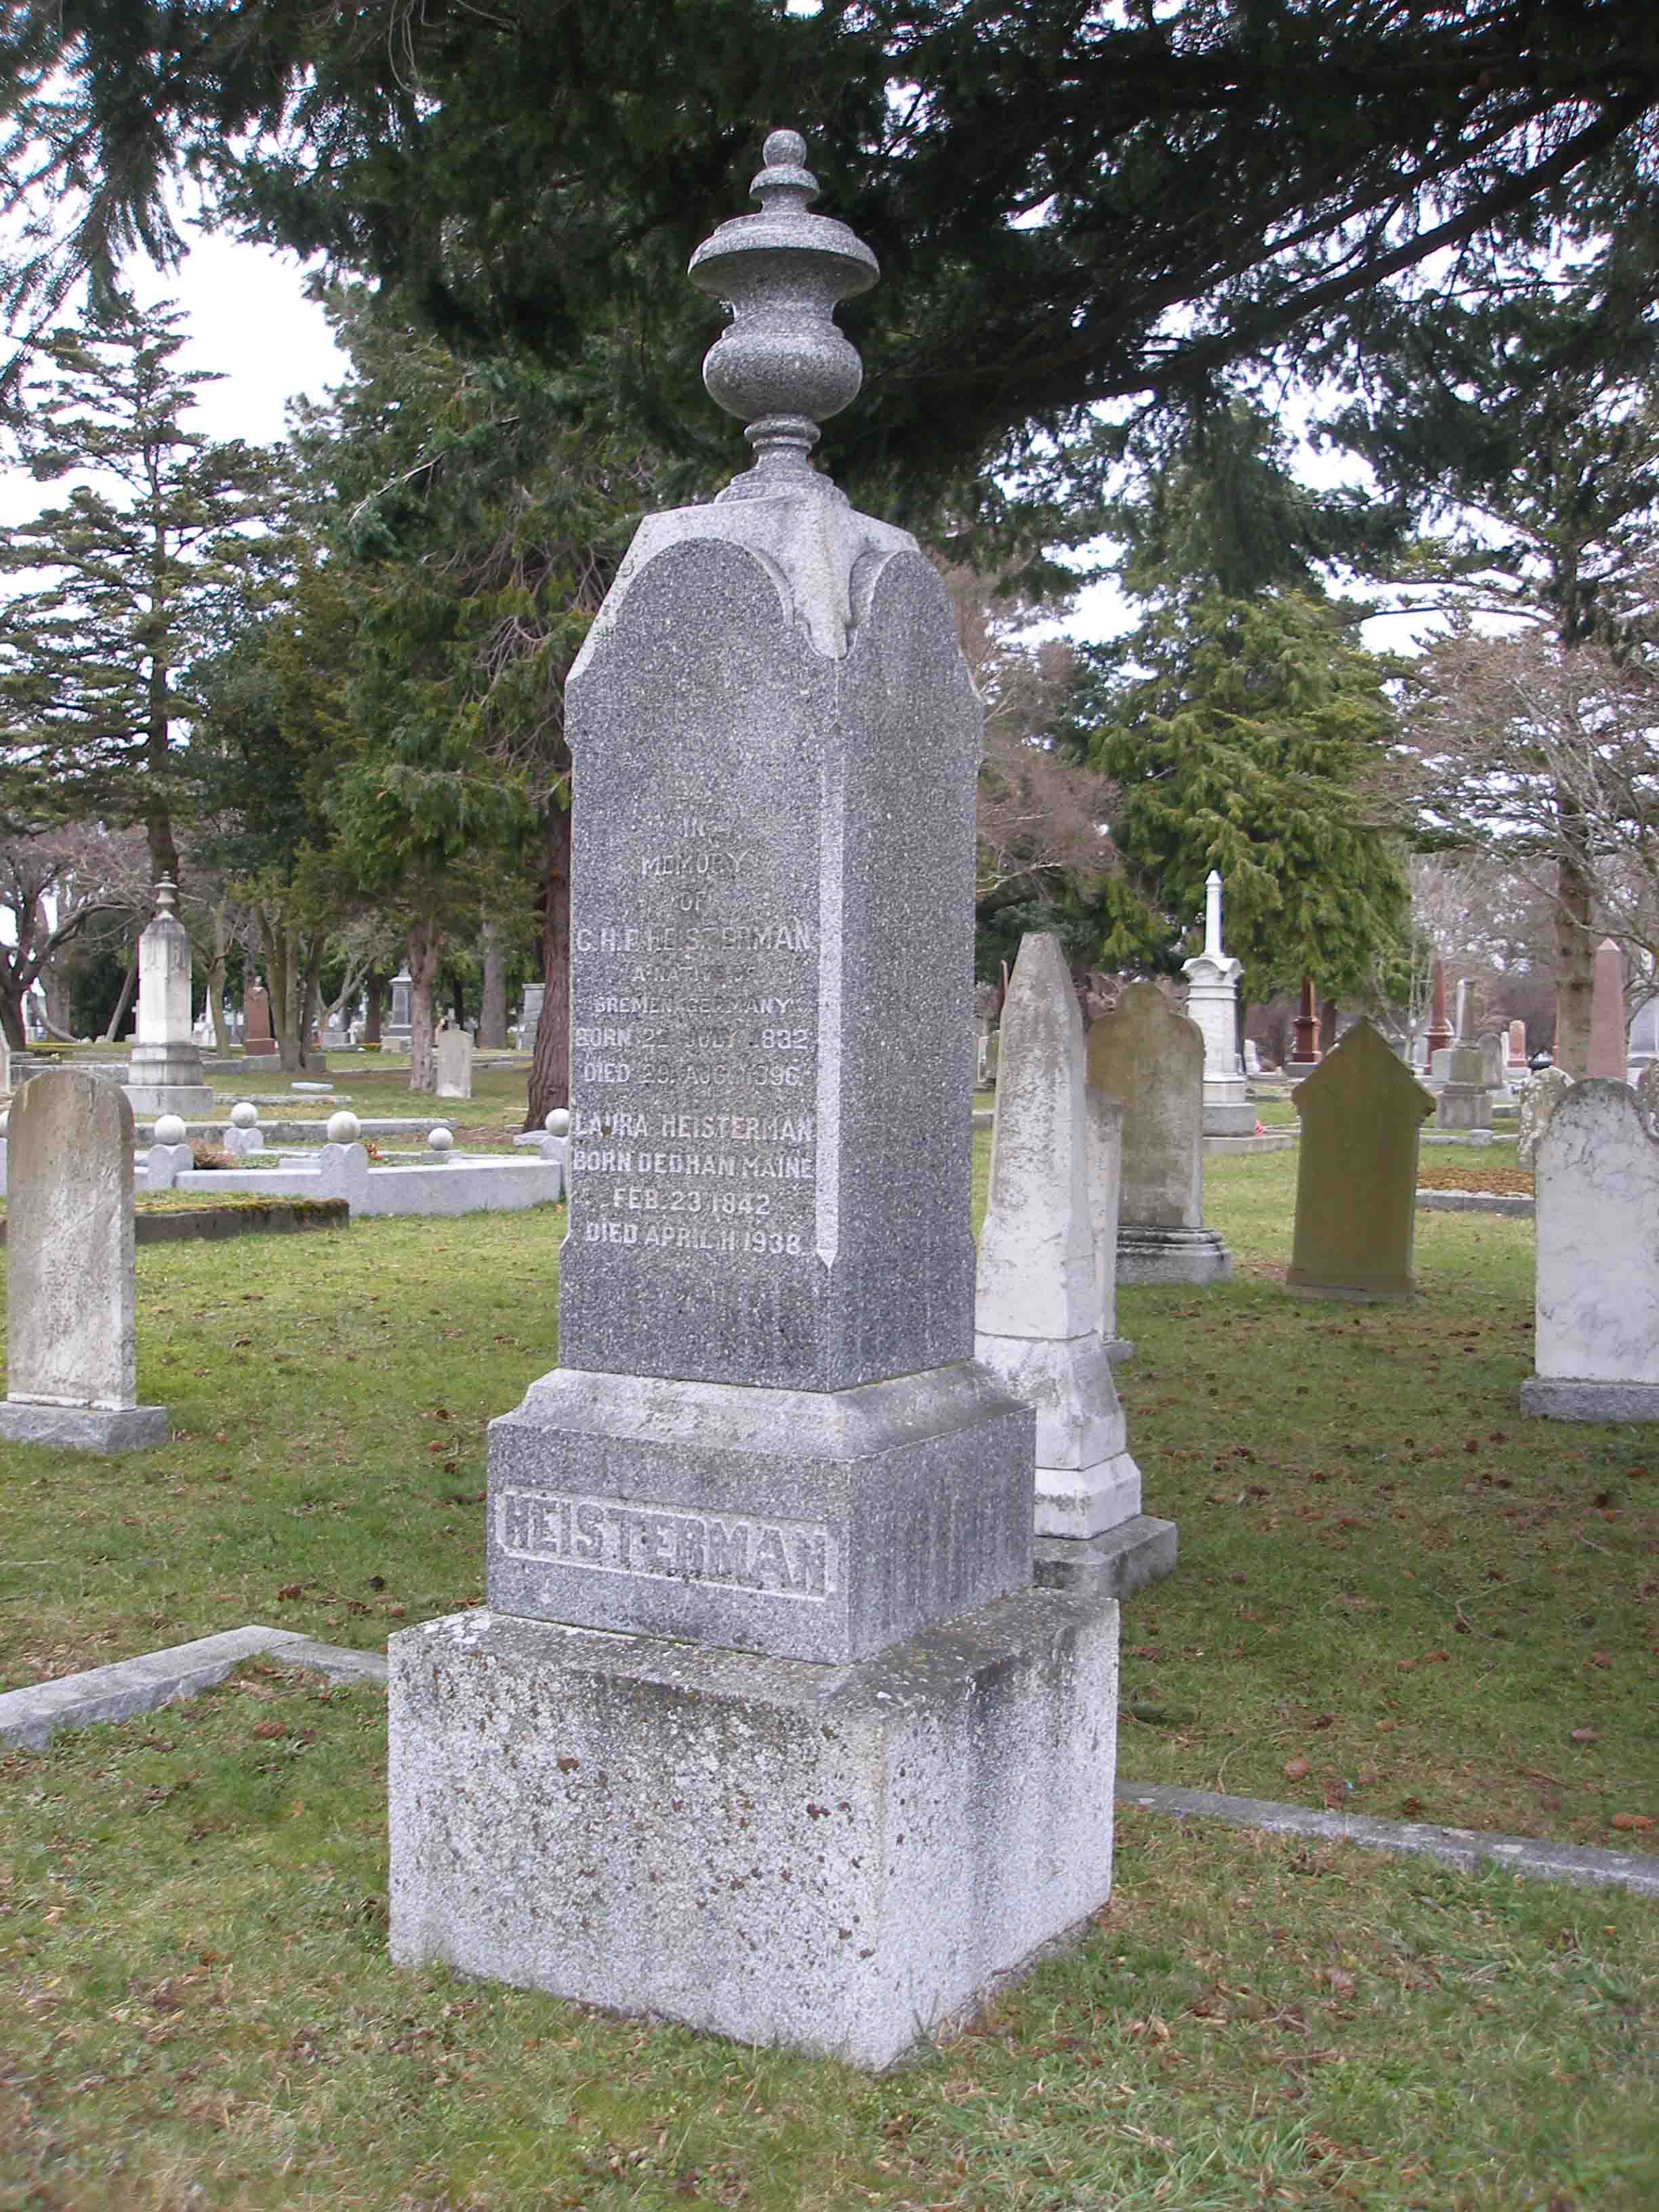 Henry heistermann grave, Ross Bay cemetery